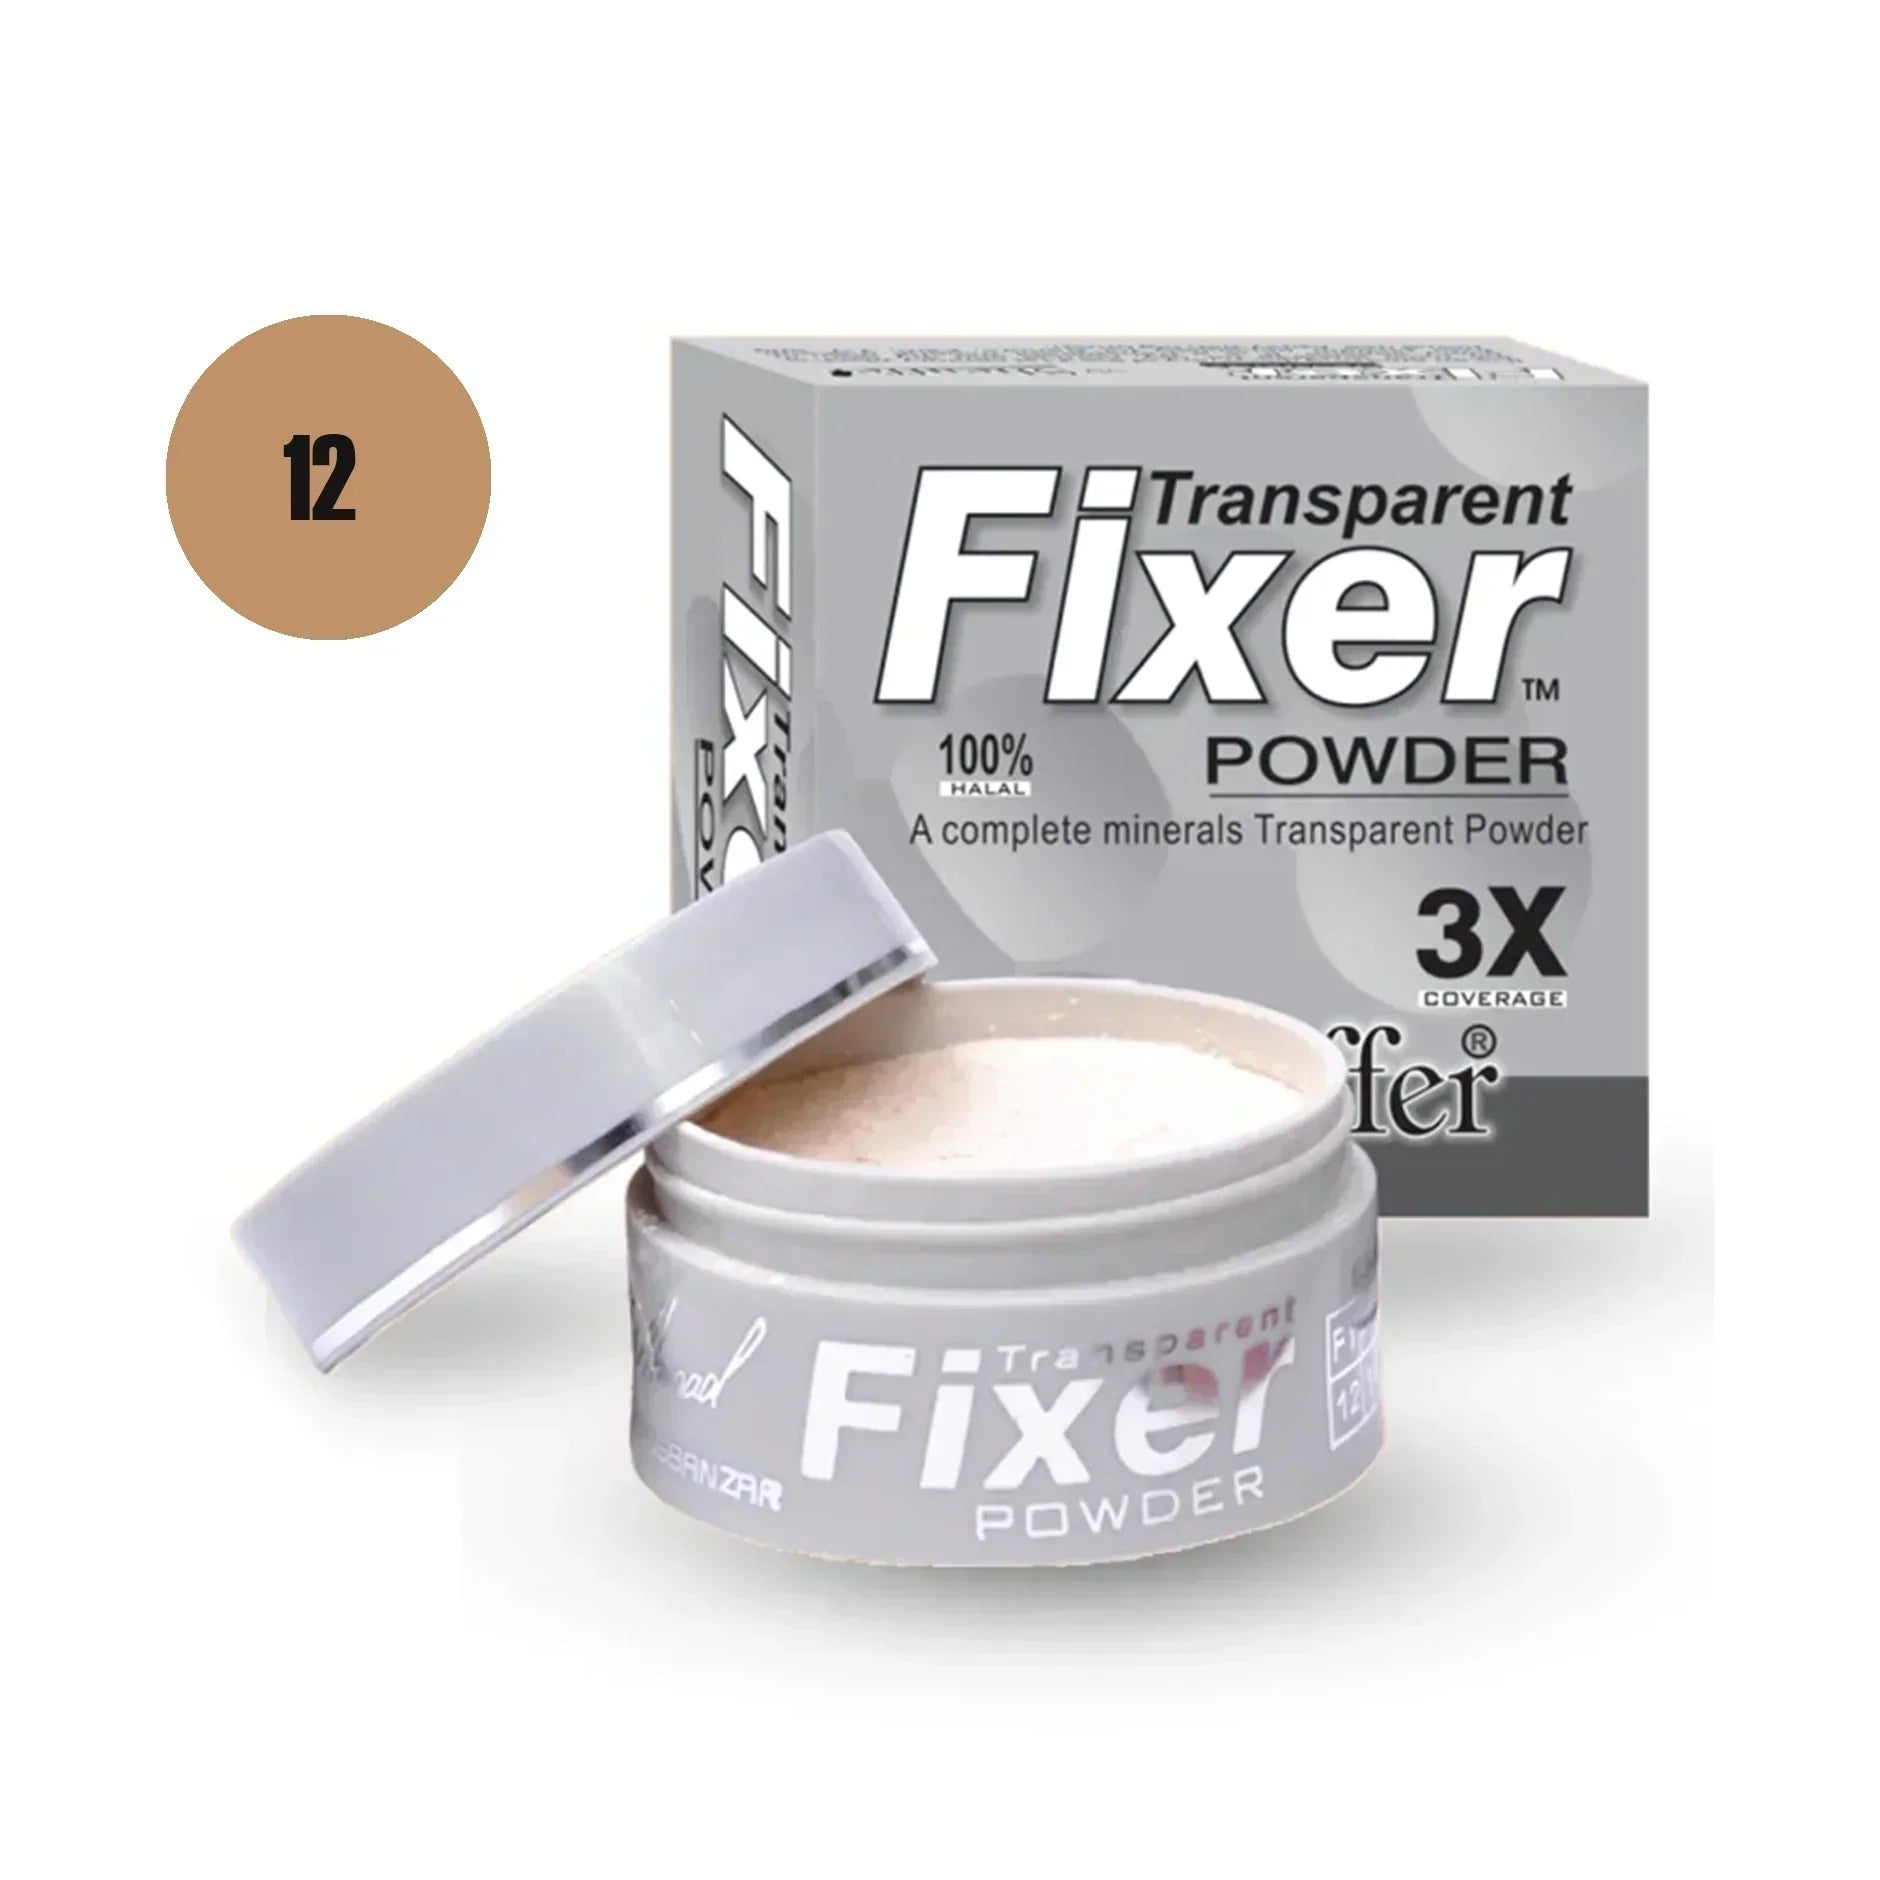 Sheaffer Transparent Fixer Powder Shade No 14 - Retailershop - Online Shopping Center